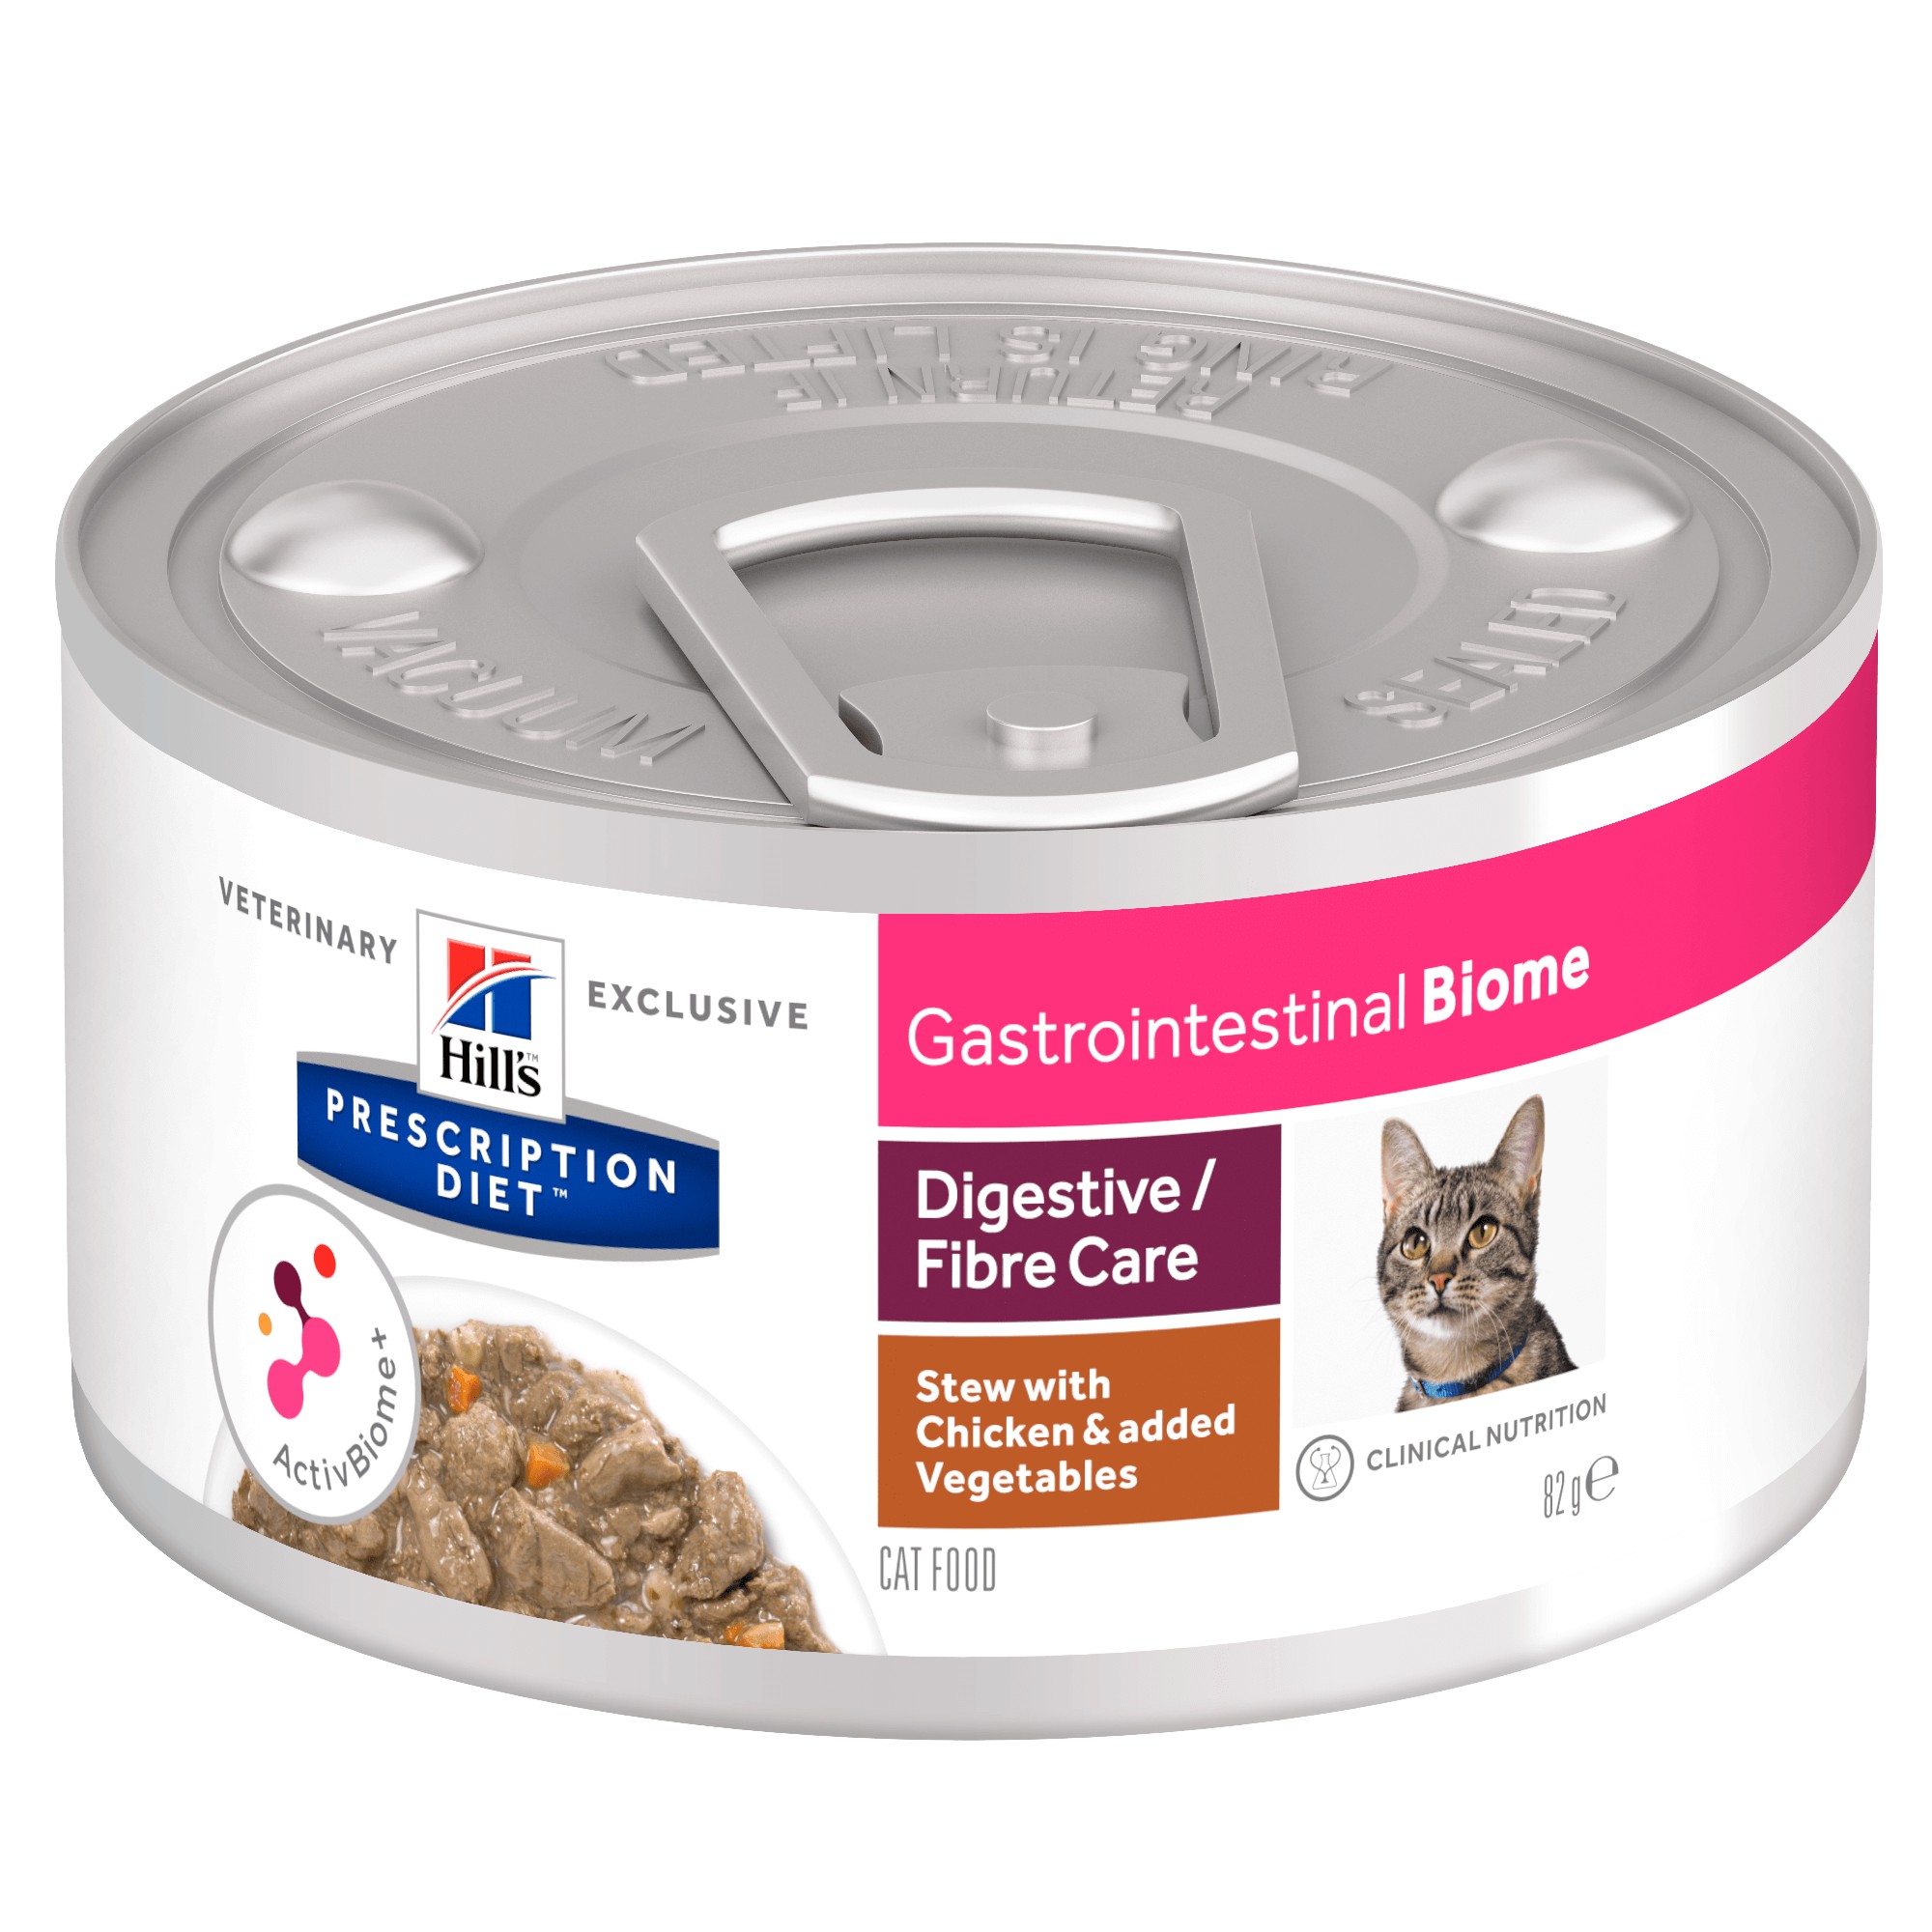 Hill's Prescription Diet Gastrointestinal Biome umido gatto | Online